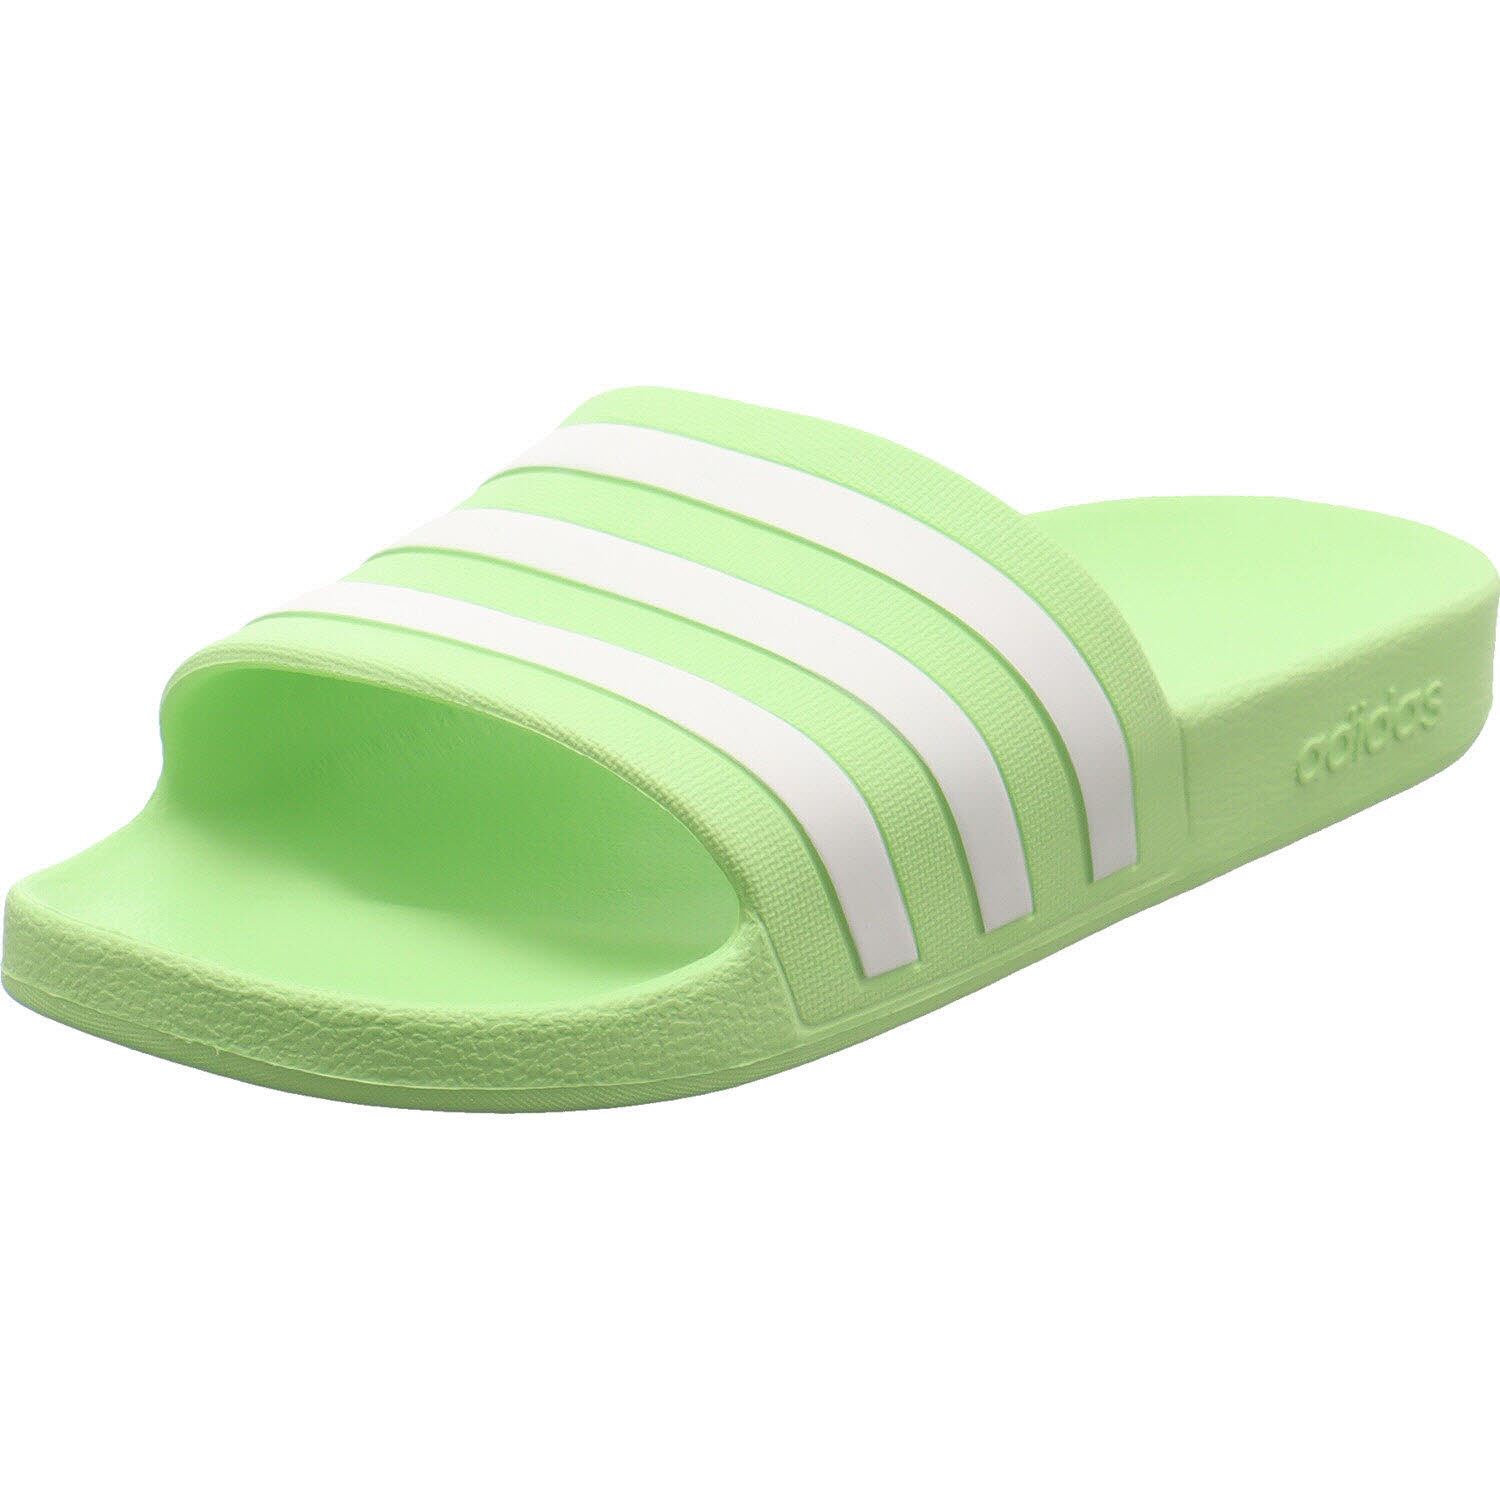 Damen Badeschuh von Adidas auch in Grün erhältlich